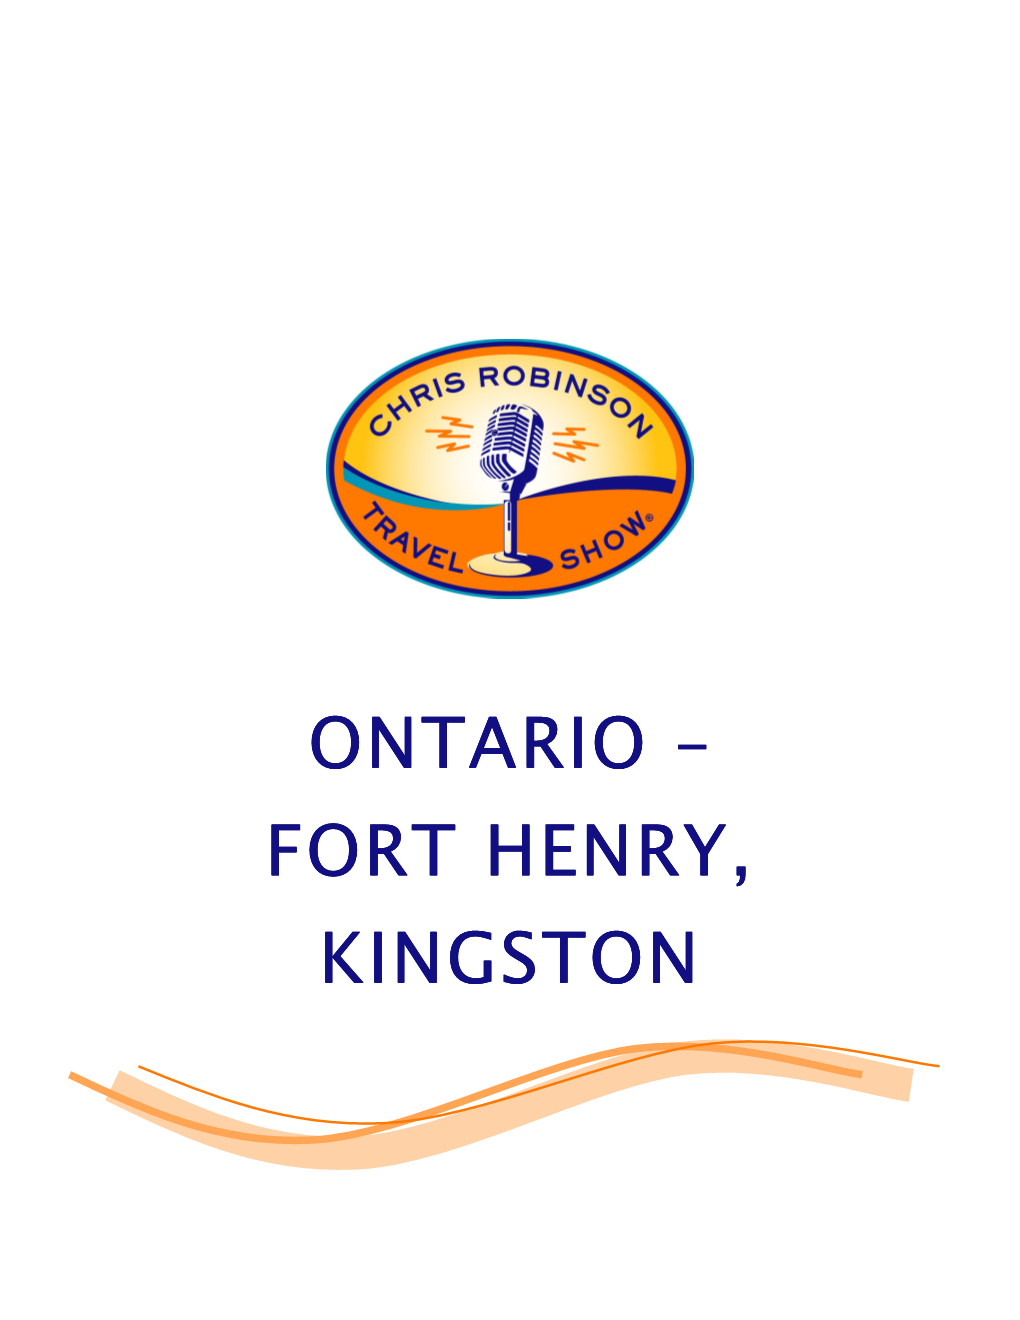 Fort Henry, Kingston